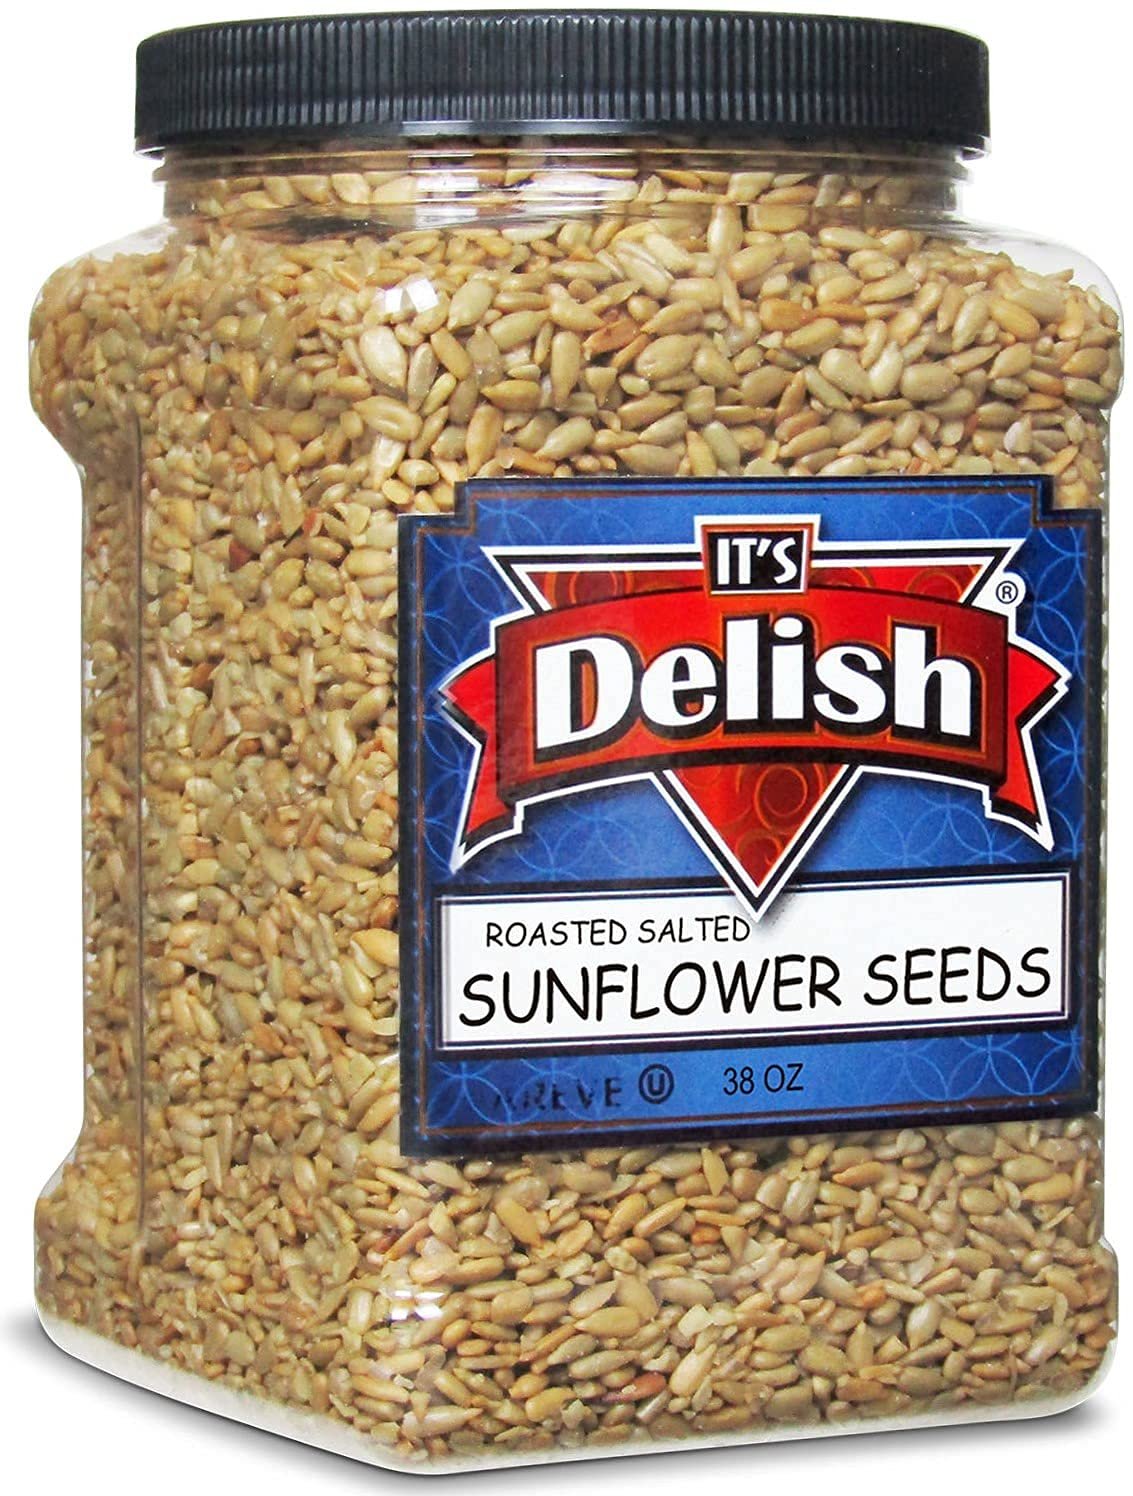 Roasted Salted Sunflower Seeds